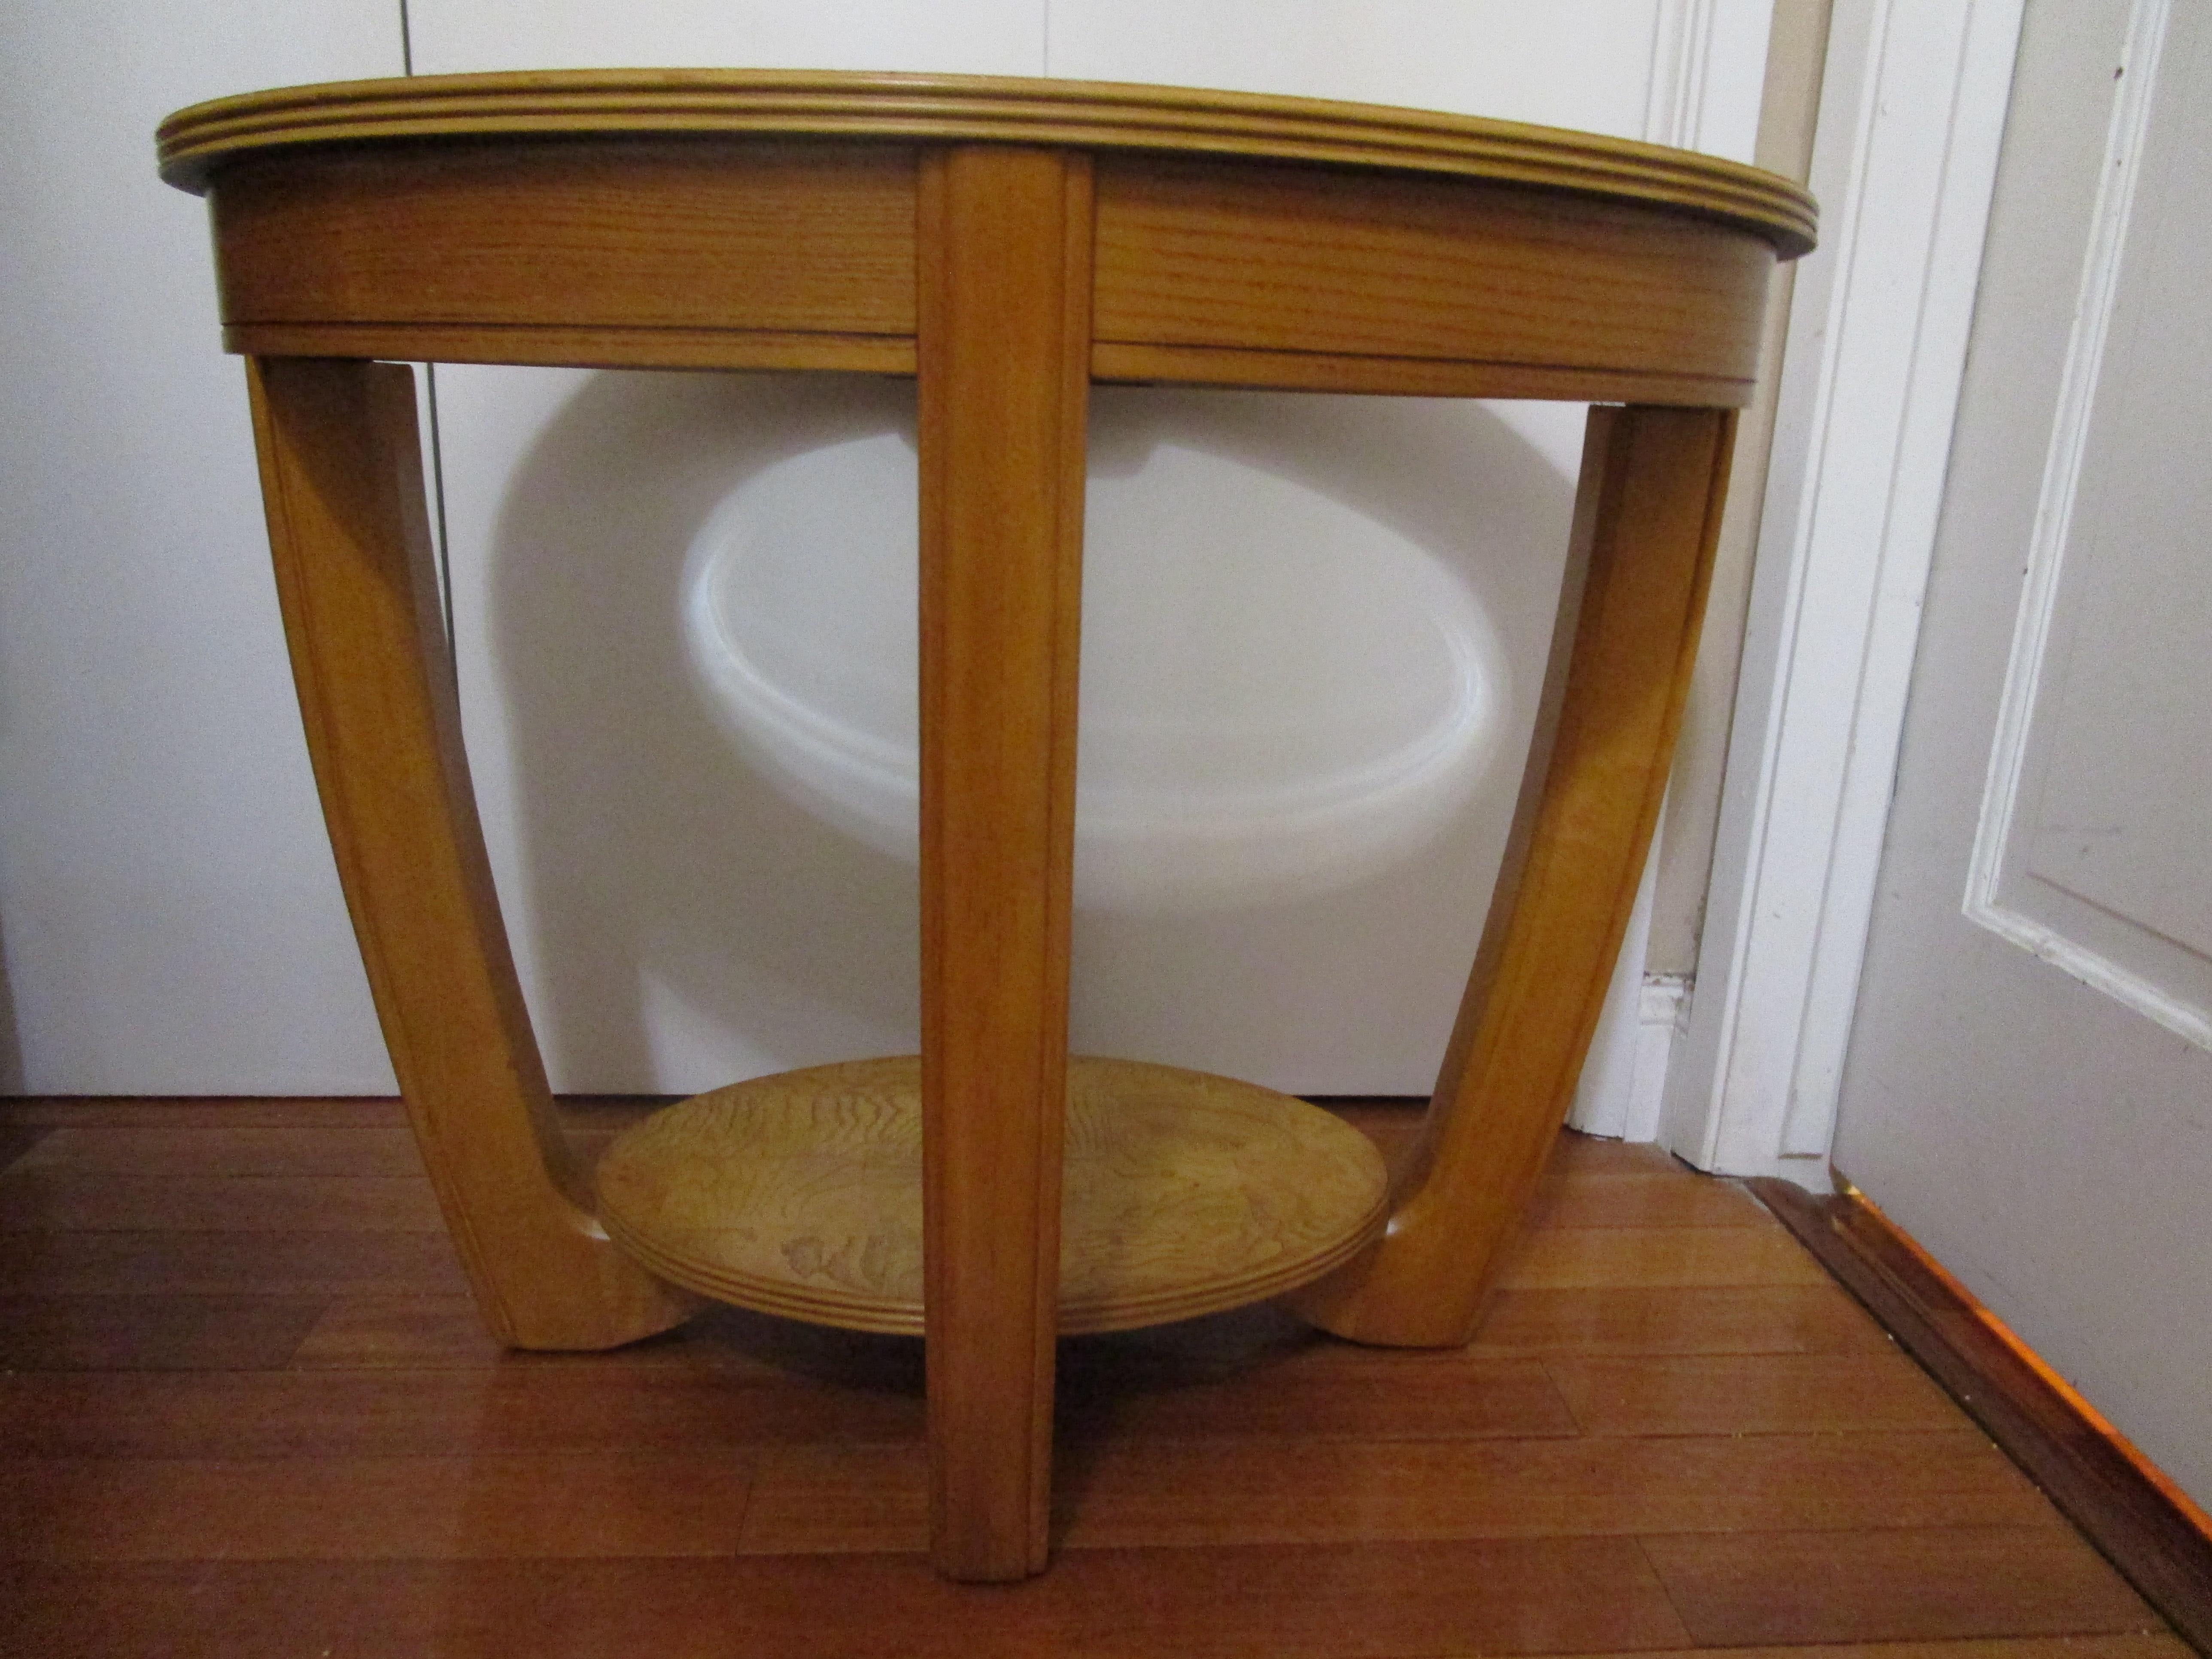 L'association de la forme ovale et de la géométrie du style art déco pour cette table en bois d'orme crée une belle silhouette. La forme de la table et le luxe de la texture du bois reflètent le style art déco. Cette table d'appoint ovale en verre